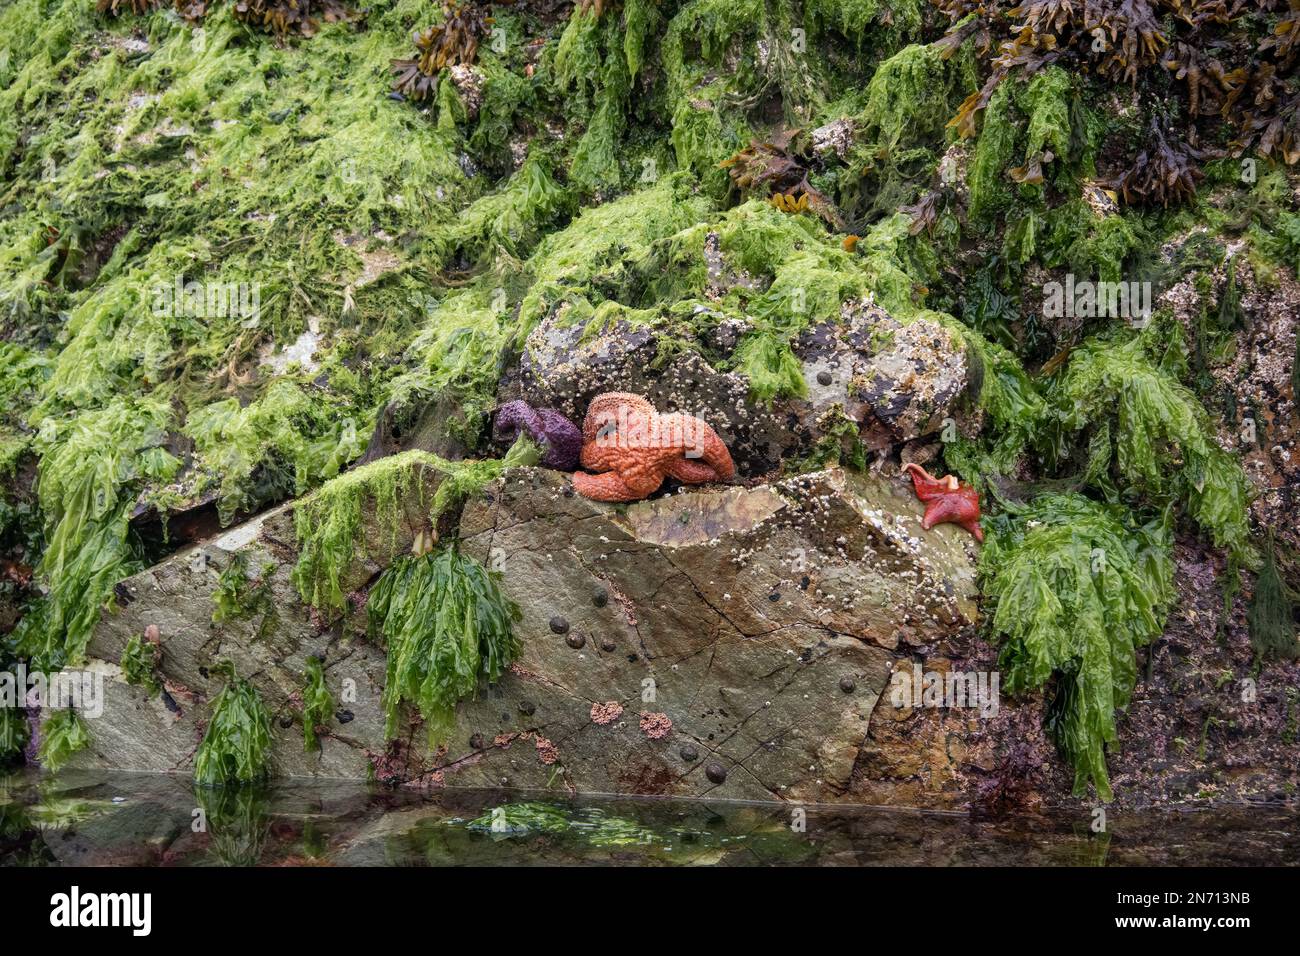 Pisaster ochraceus violet et orange, une star de chauve-souris Patiria miniata, barnacles, buccins, laitue de mer et herbe de roche, marée basse, Haida Gwaii Banque D'Images